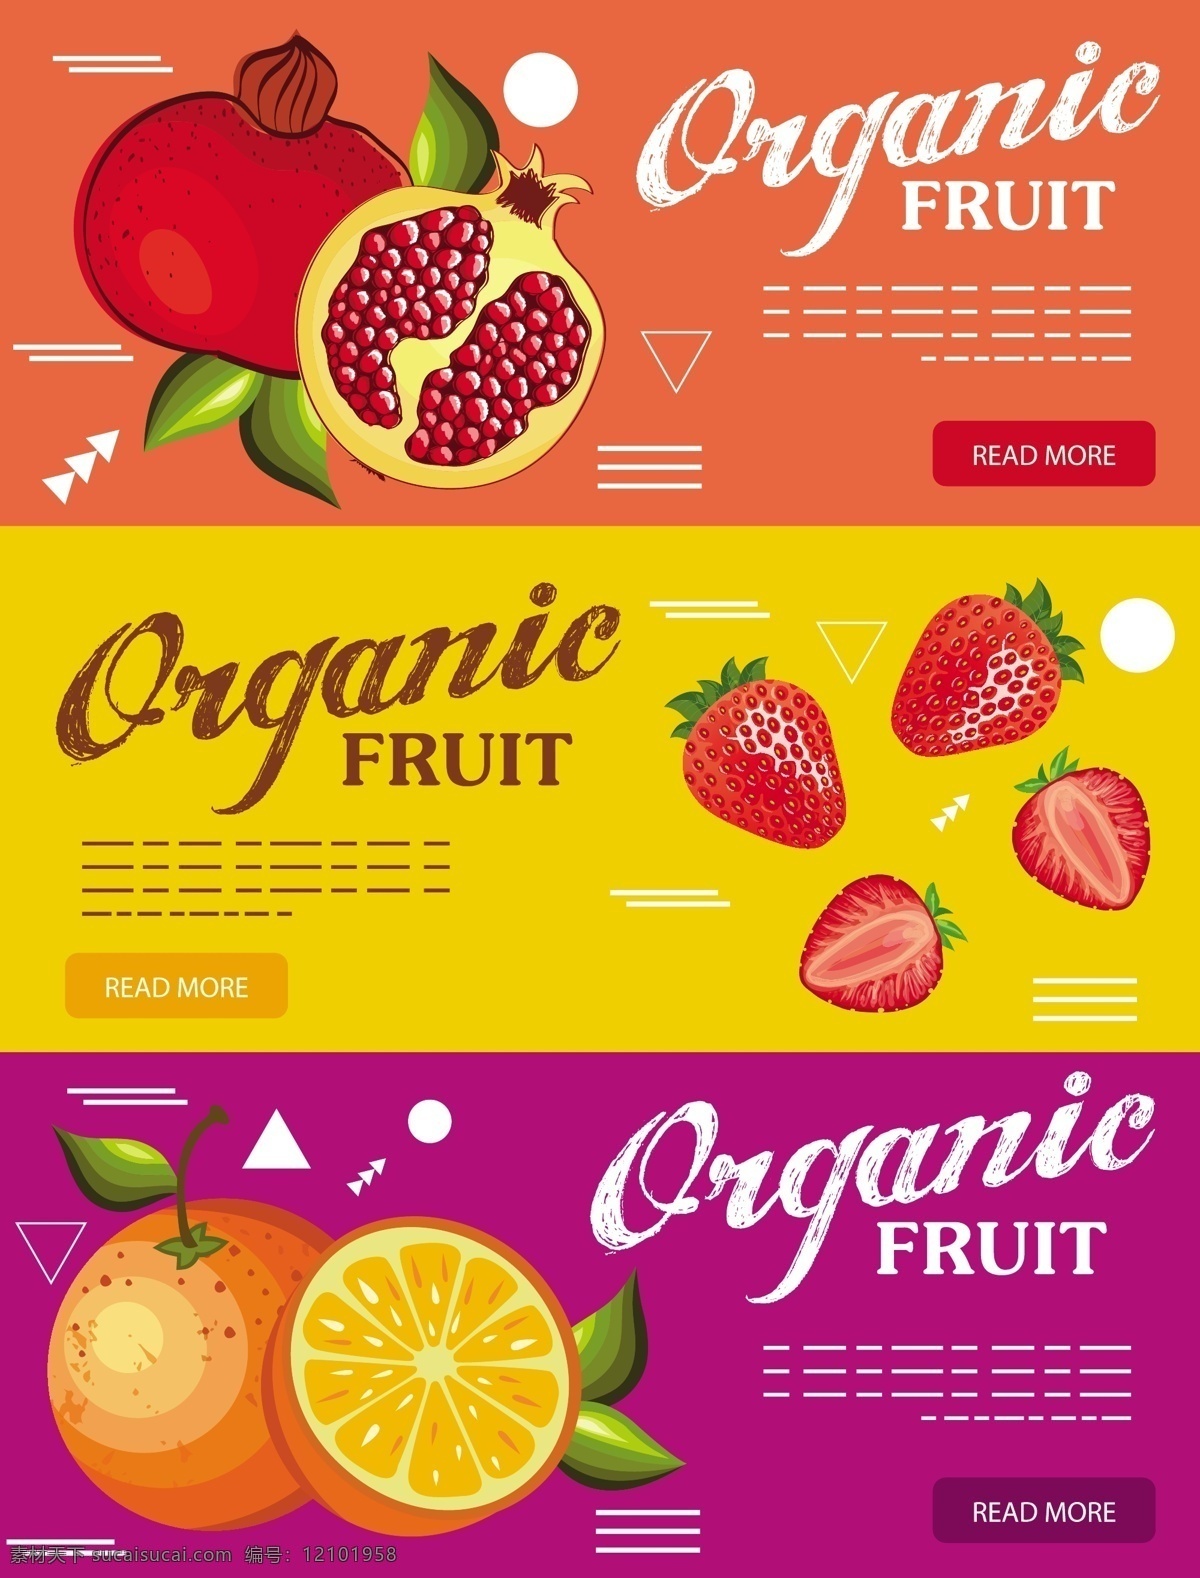 水果 广告 背景 矢量 石榴 草莓 橘子 红色背景 矢量素材 水果广告